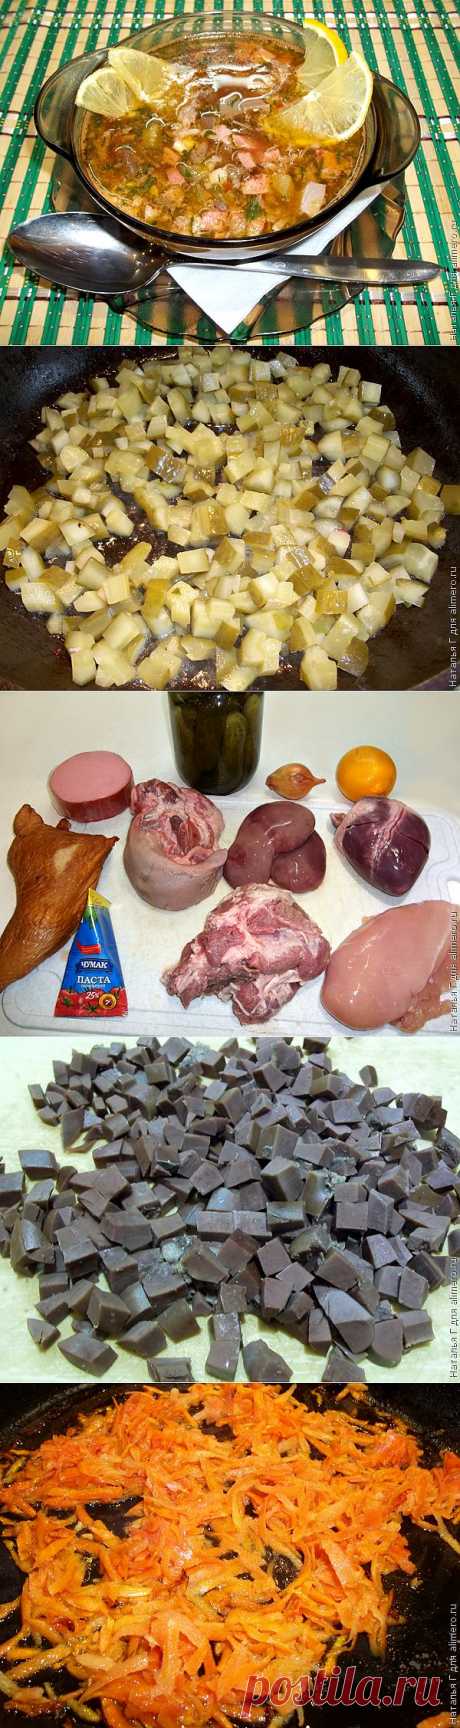 Солянка сборная мясная, с колбасой, копченостями и субпродуктами / Рецепты с фото